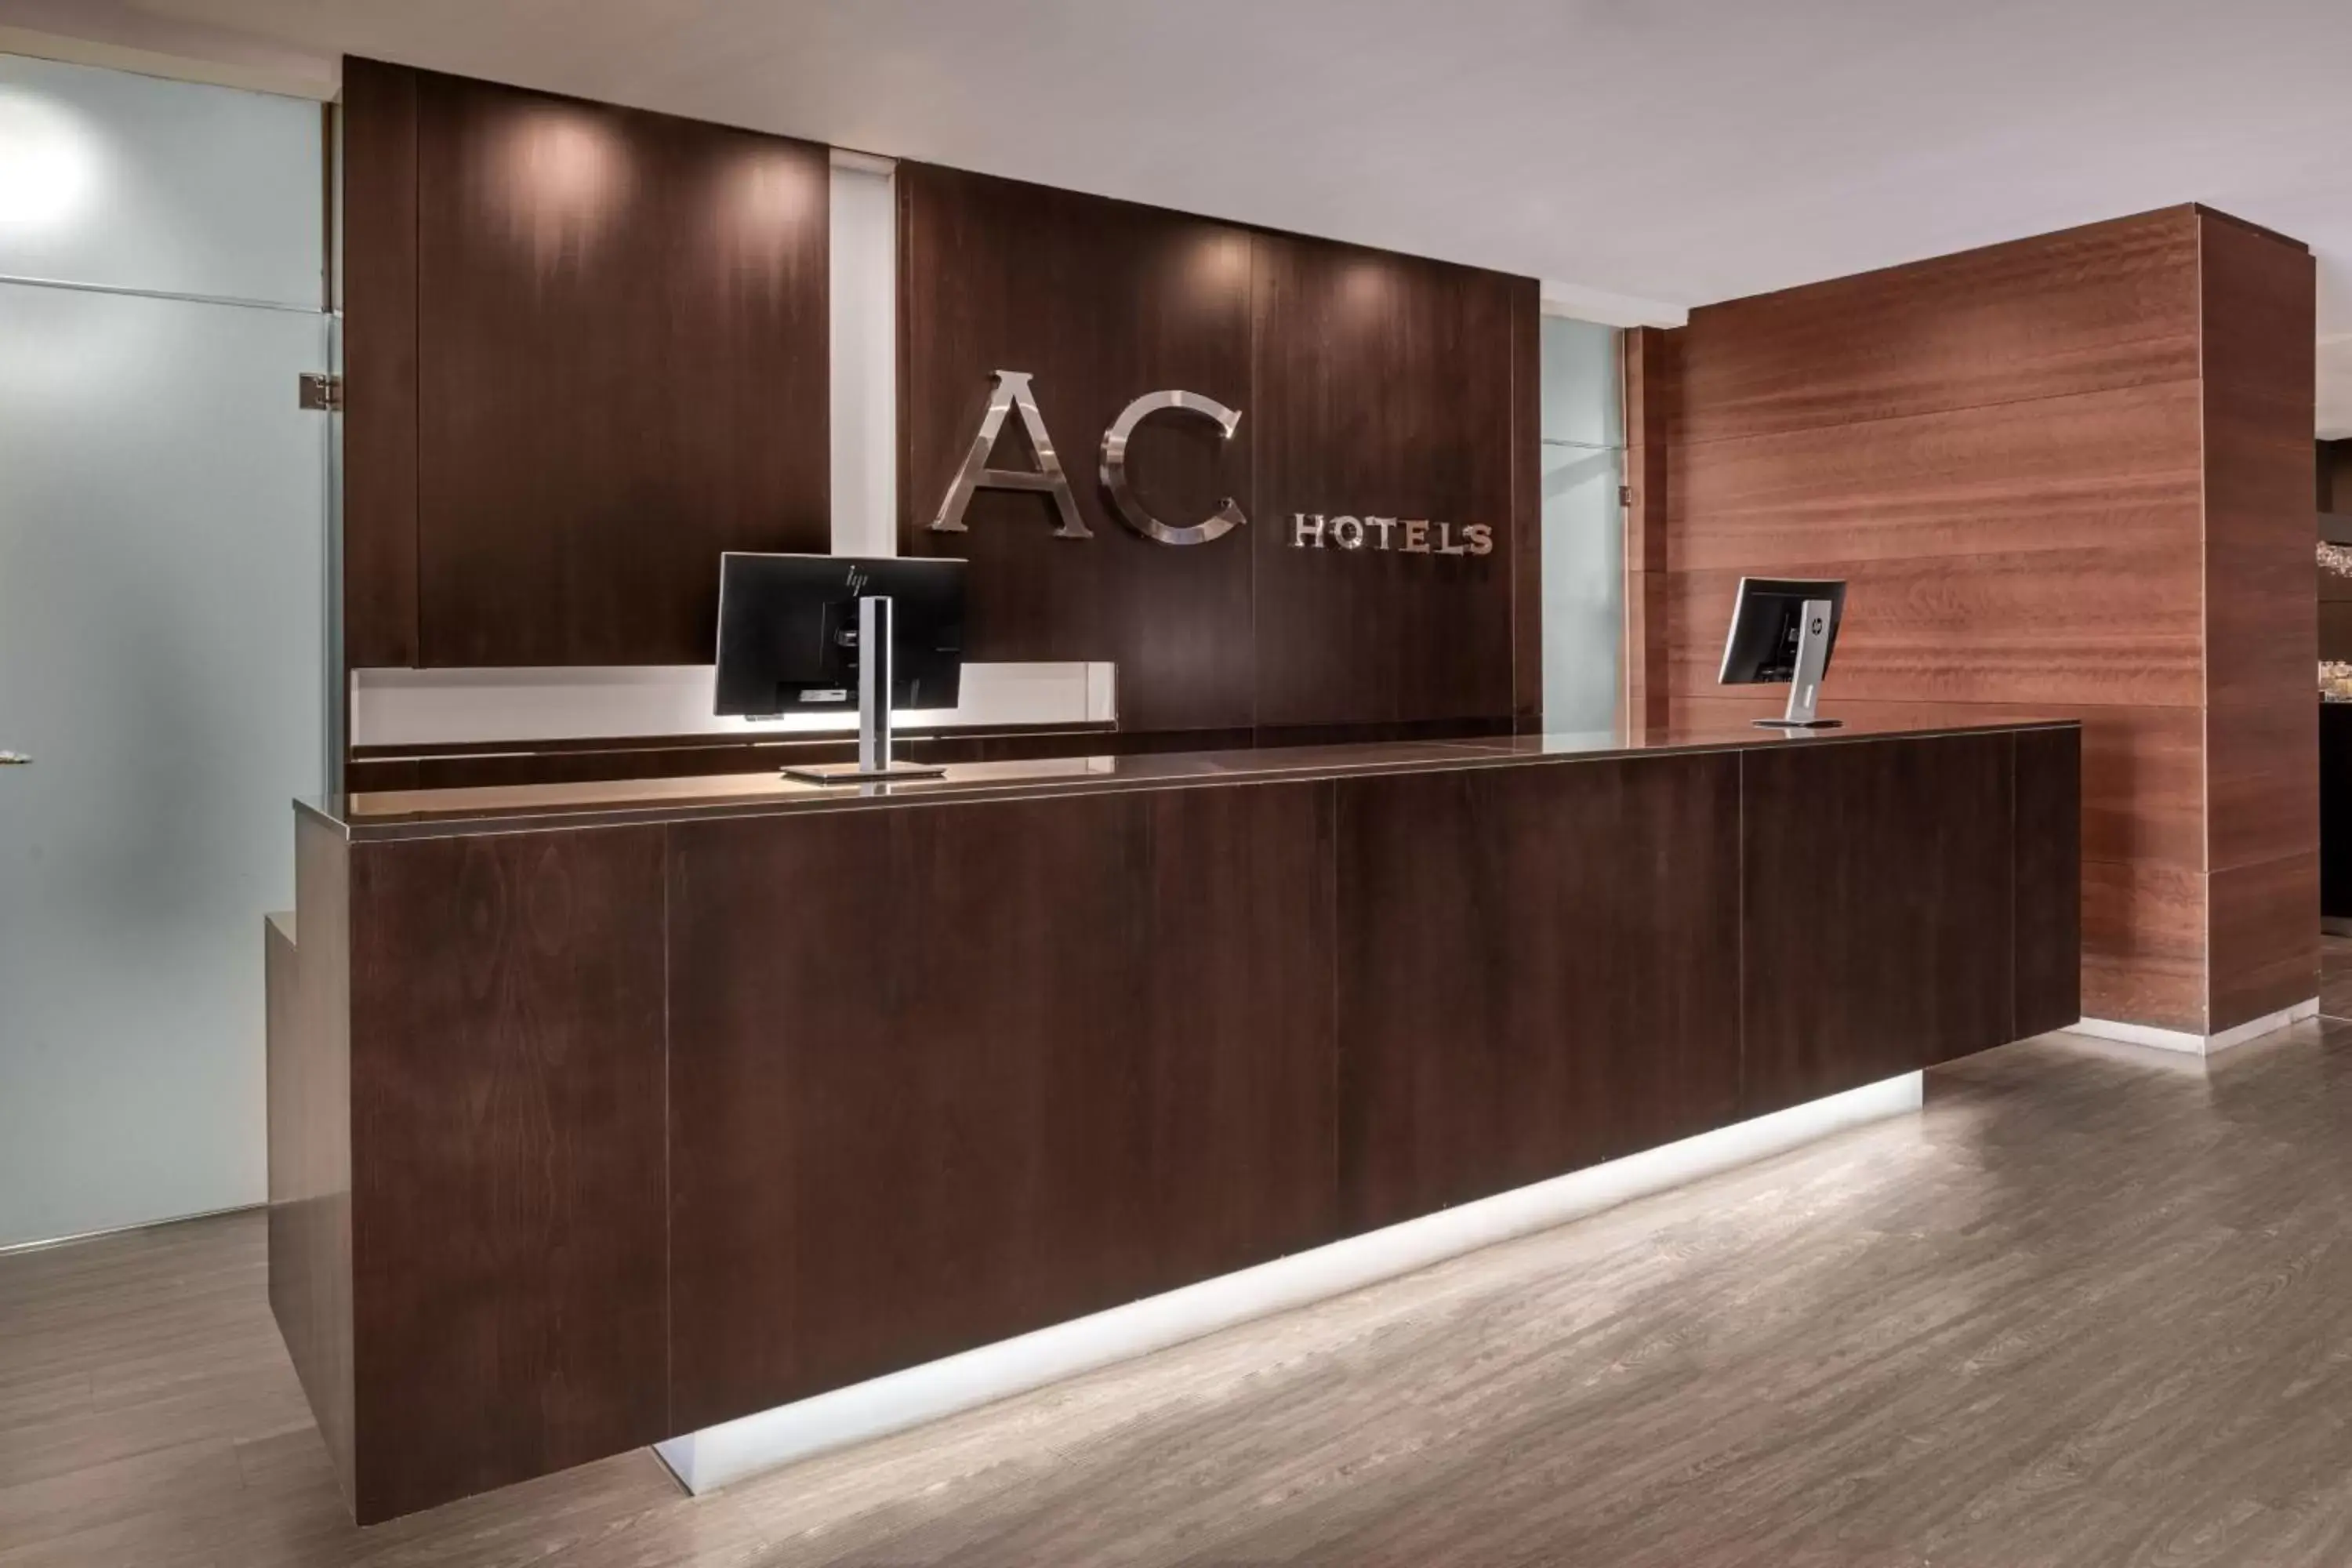 Lobby or reception in AC Hotel Murcia by Marriott